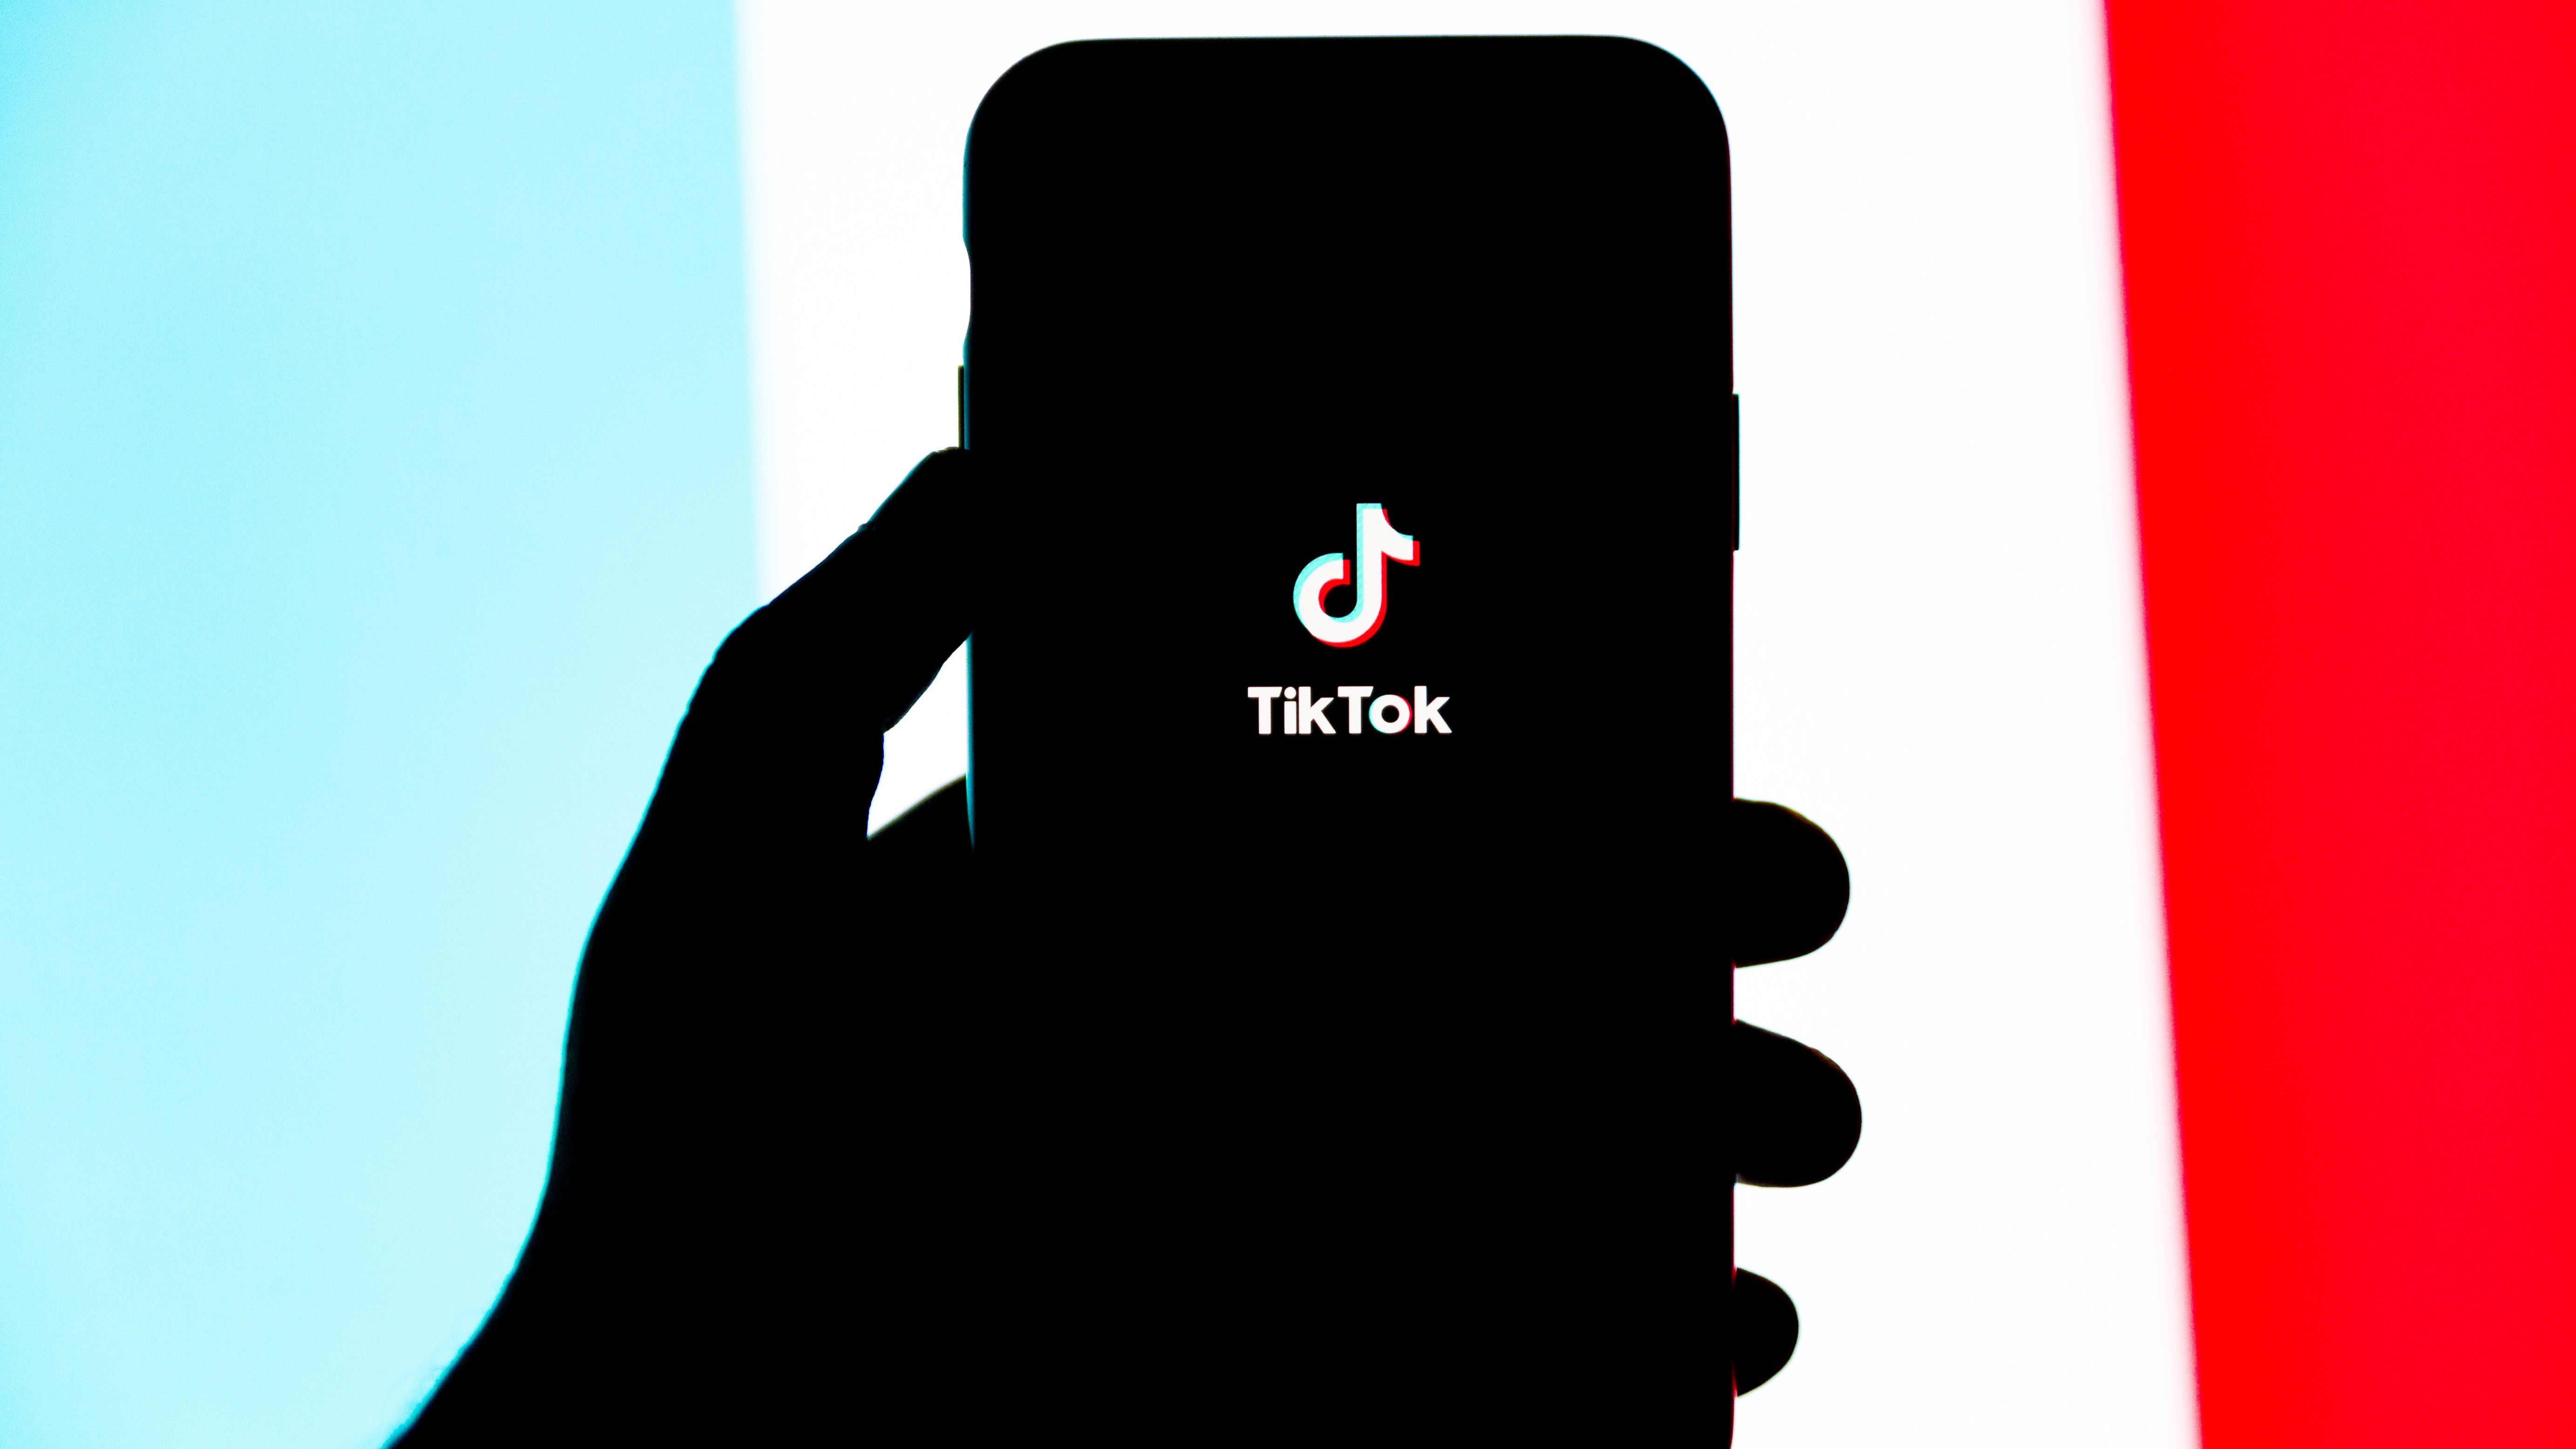 TikTok ou Kwai? Qual app está pagando mais para iniciantes?